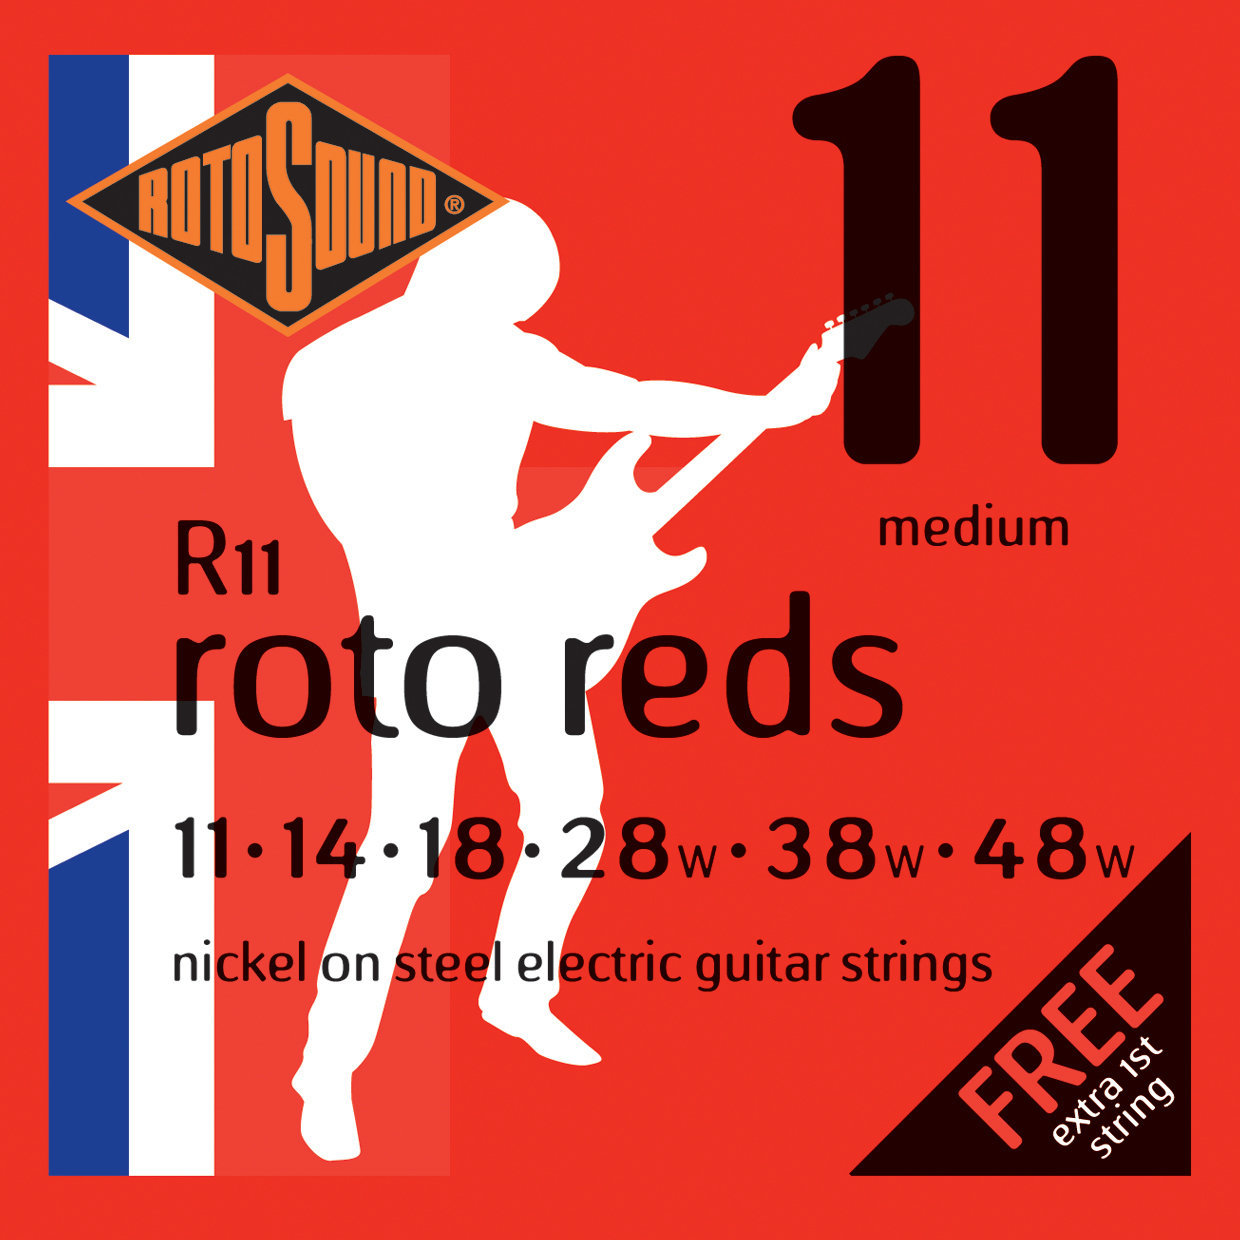 Struny pre elektrickú gitaru Rotosound R11